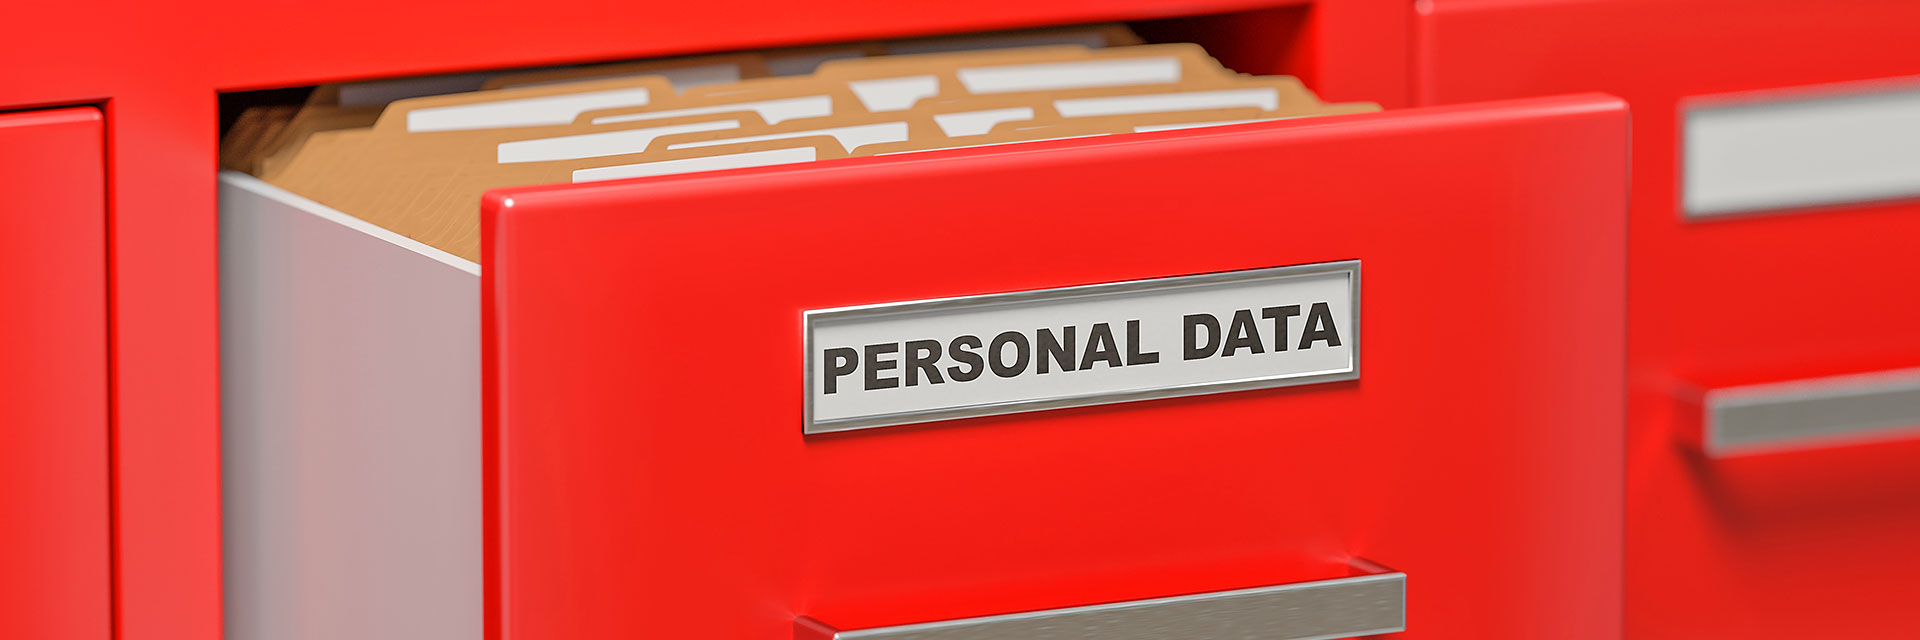 Wir schützen Ihre persönlichen Daten. Lesen Sie unsere Datenschutzerklärung.